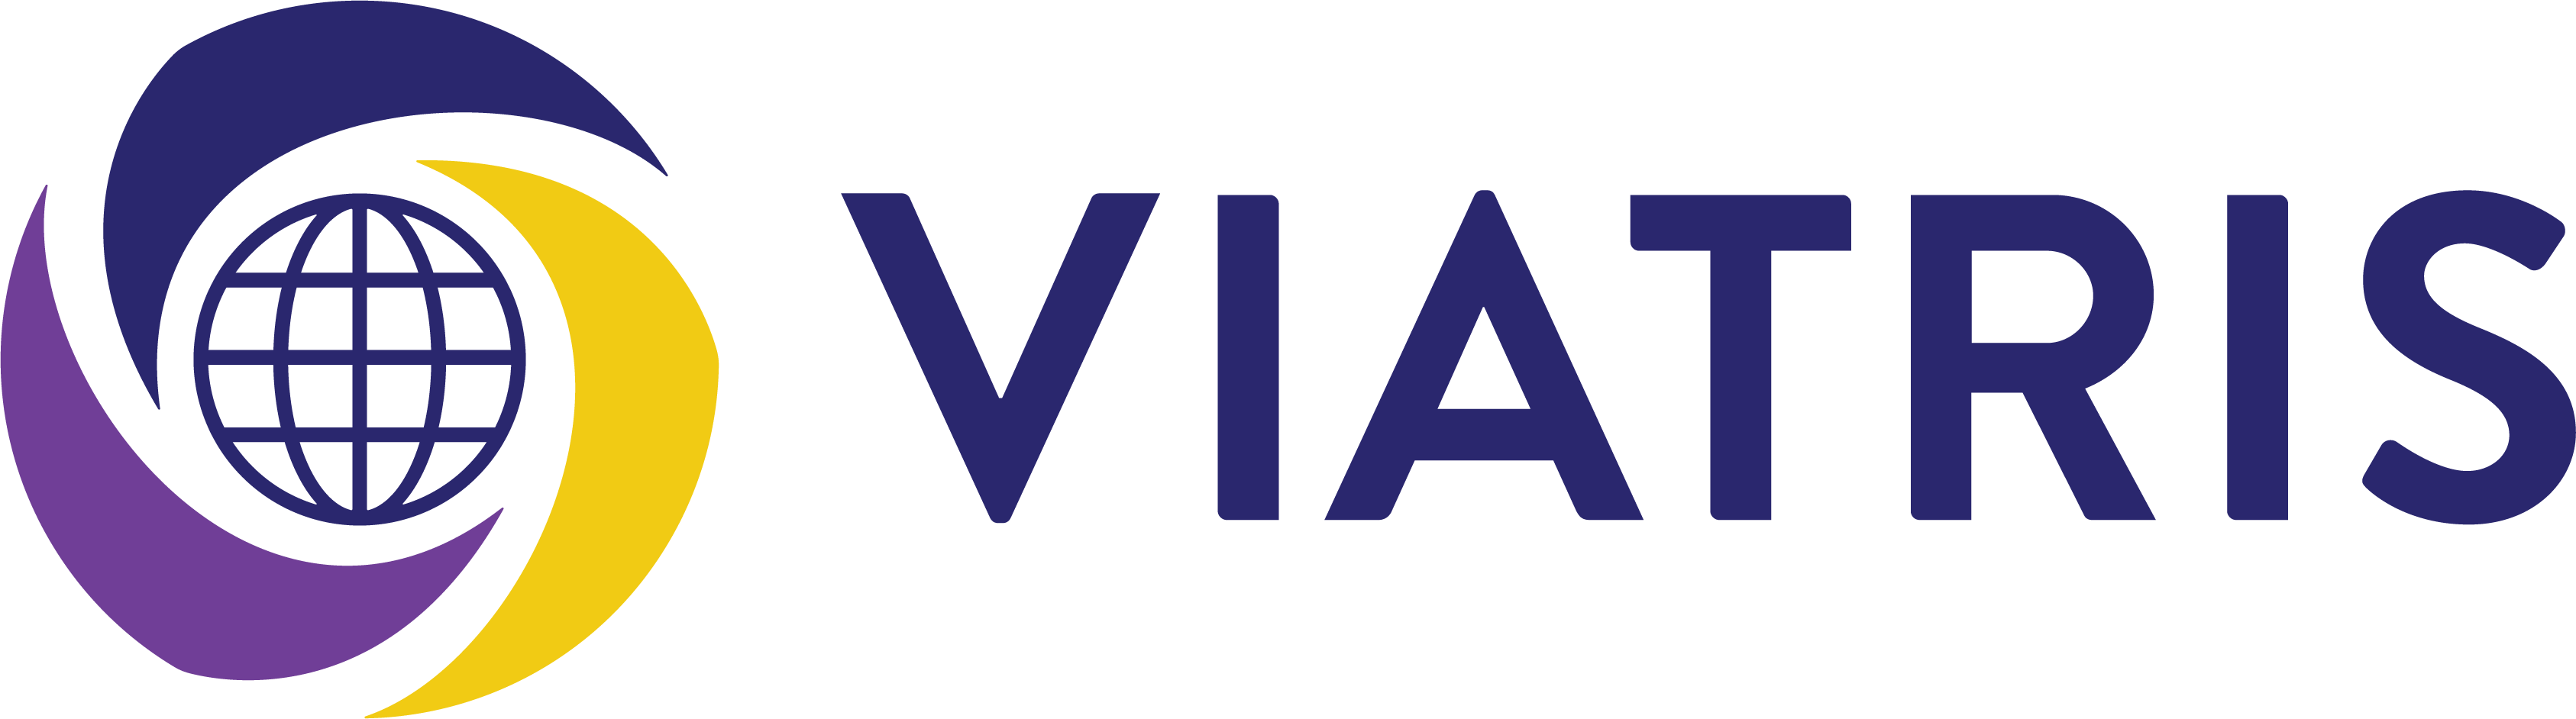 Viatris - Logo